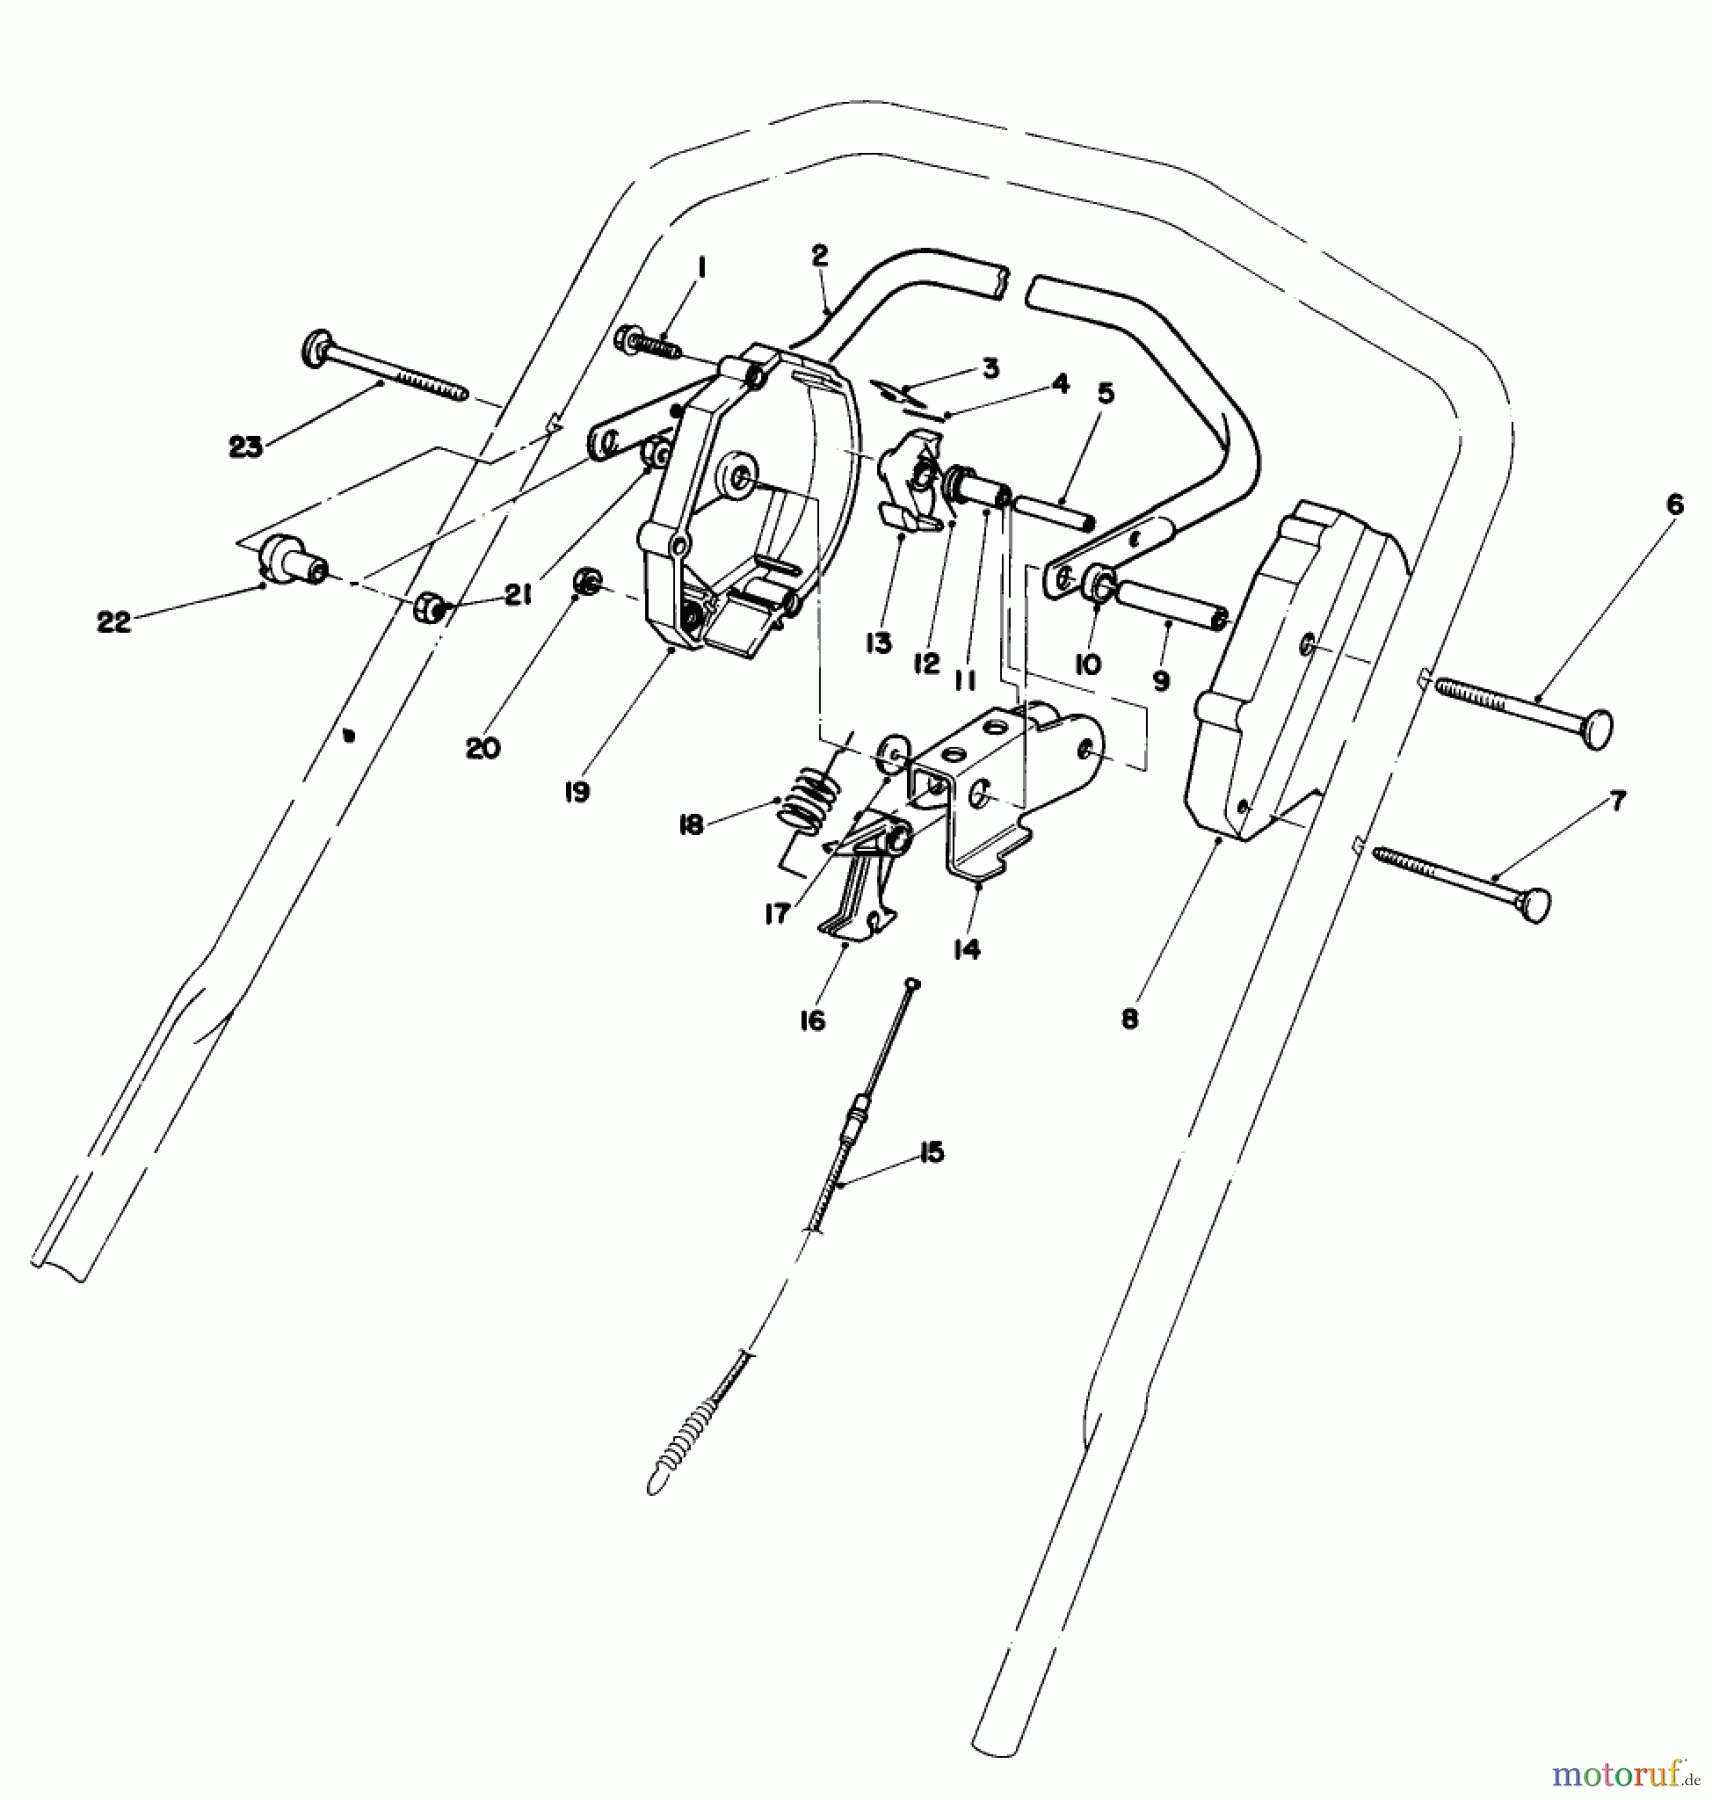  Toro Neu Mowers, Walk-Behind Seite 1 20584 - Toro Lawnmower, 1986 (6000001-6999999) CONTROL ASSEMBLY